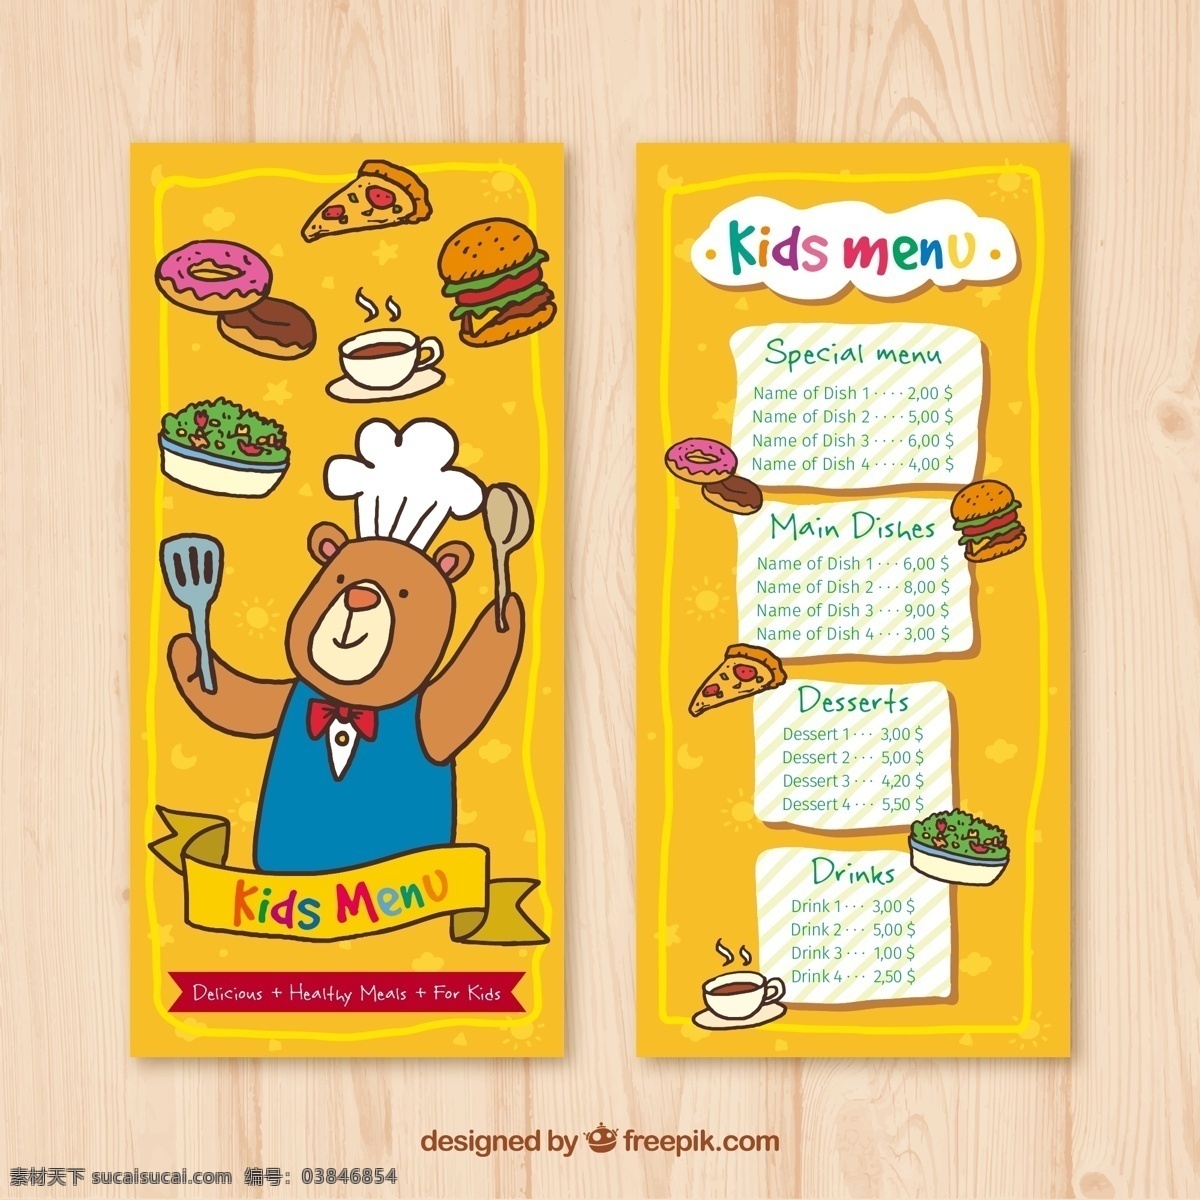 可爱 熊 厨师 儿童 菜单 熊厨师 三角披萨 汉堡包 咖啡 沙拉 广告海报设计 菜单菜谱